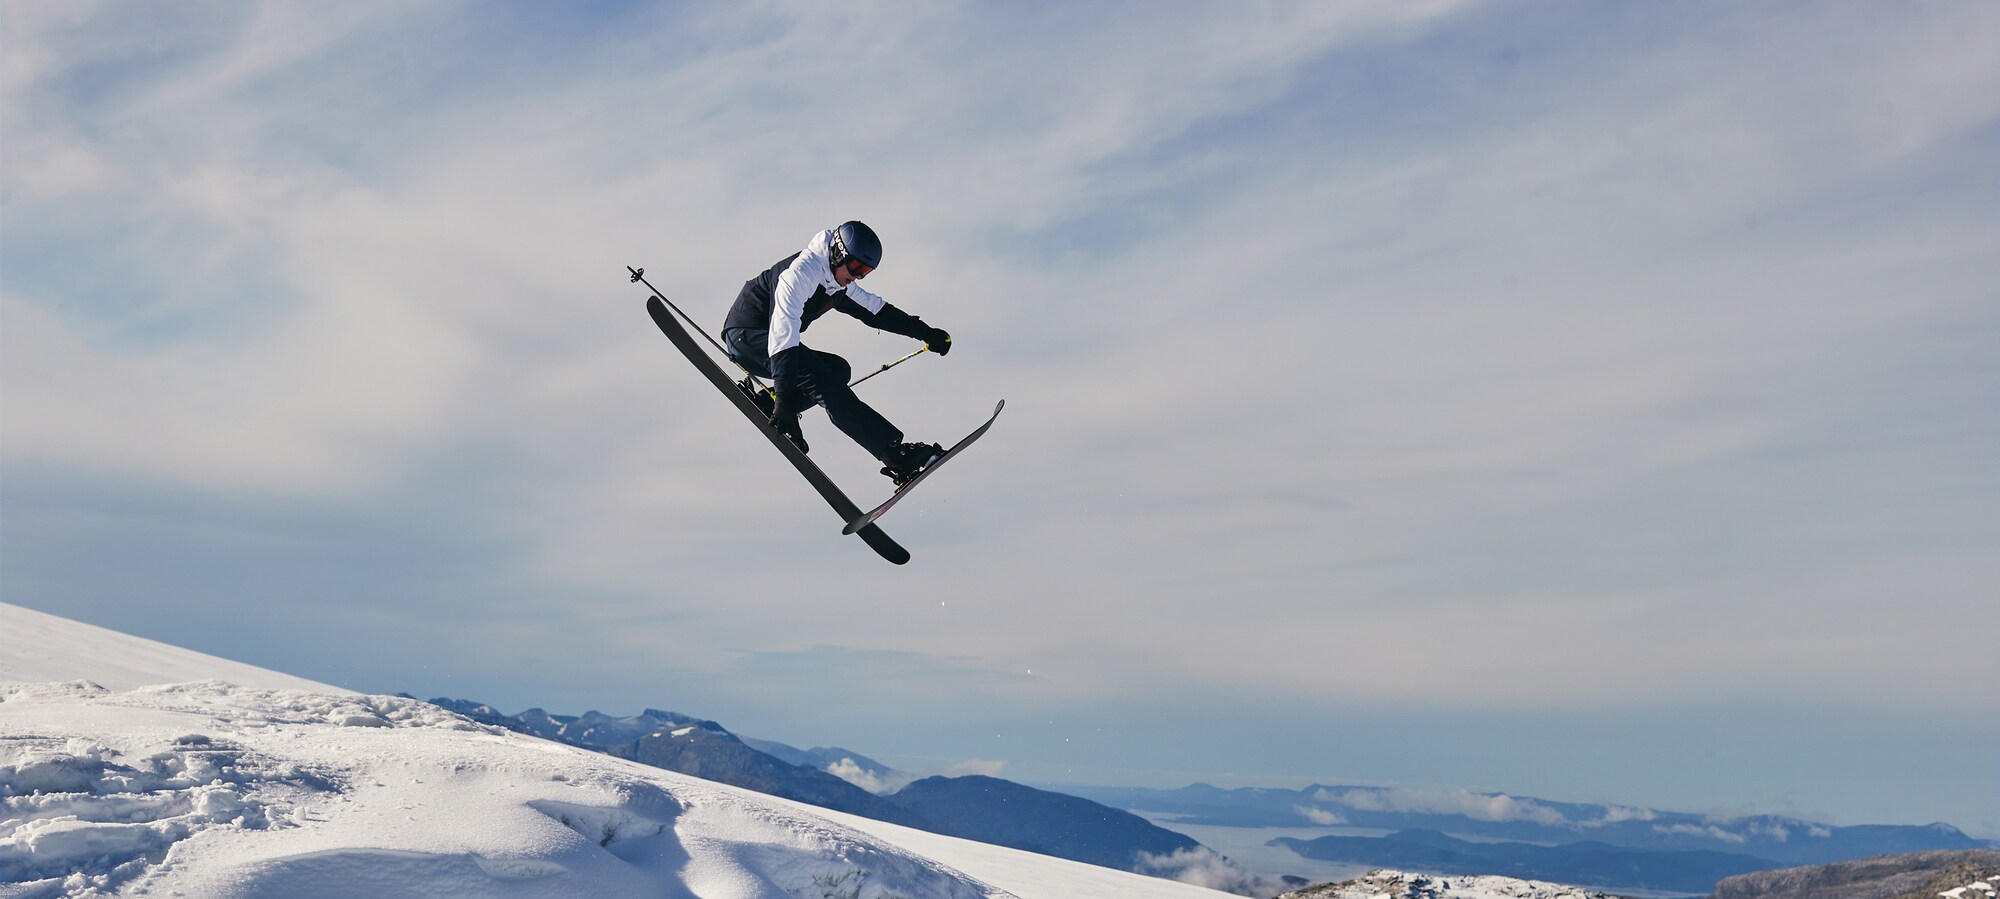 Todo para las pistas de nieve Imprescindibles para el esquí y el snowboard